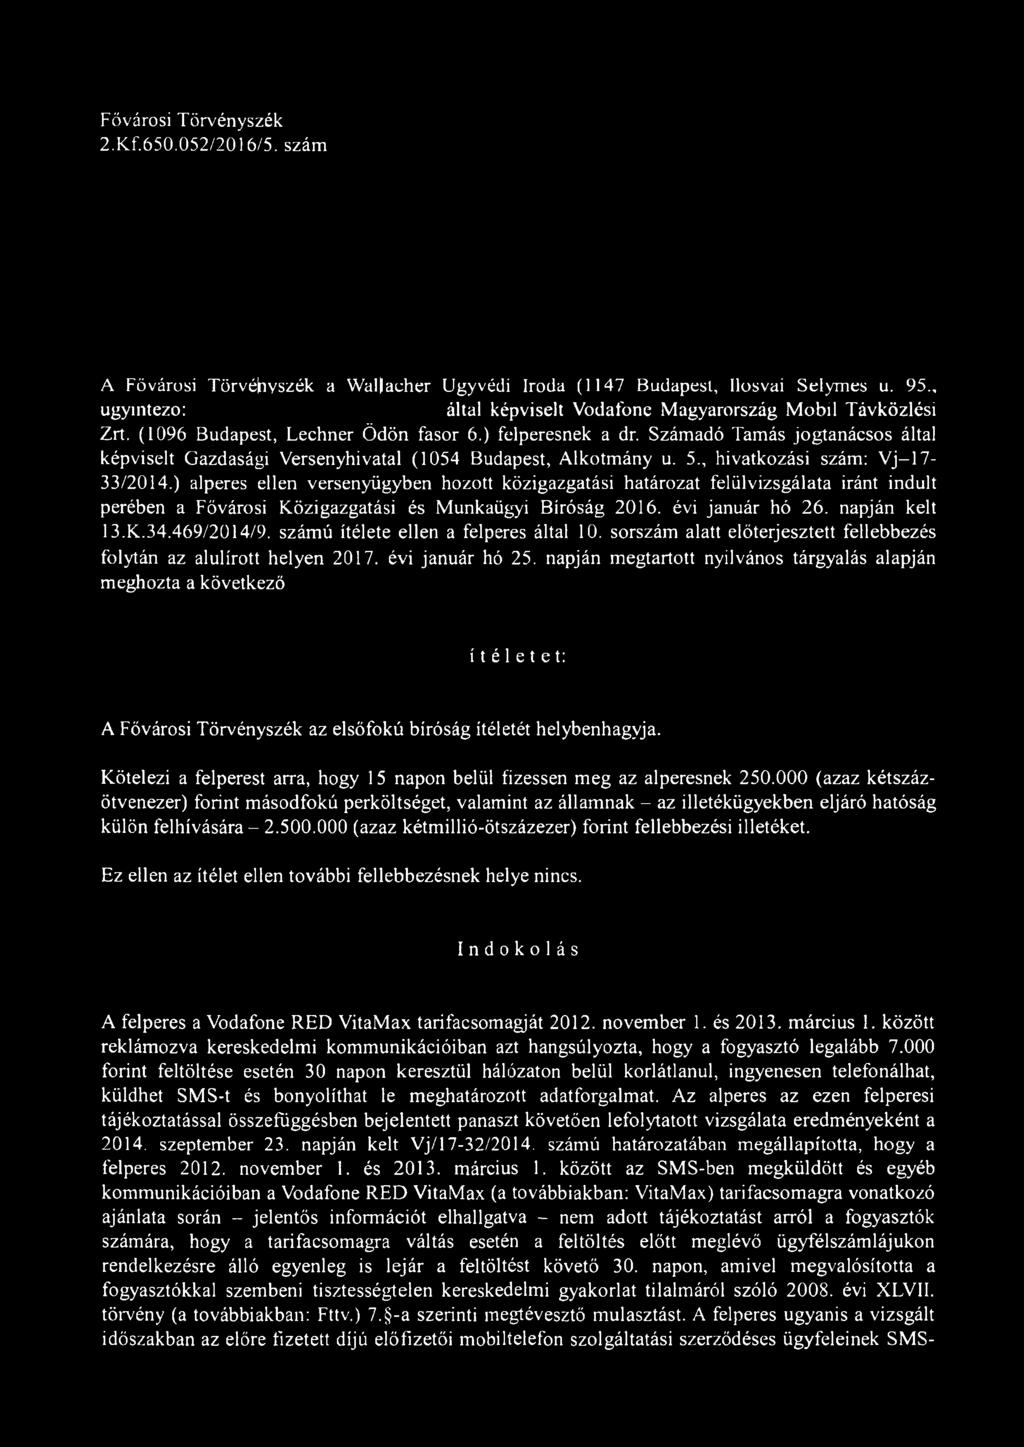 Számadó Tamás jogtanácsos által képviselt Gazdasági Versenyhivatal (1054 Budapest, Alkotmány u. 5., hivatkozási szám: Vj-17-33/2014.